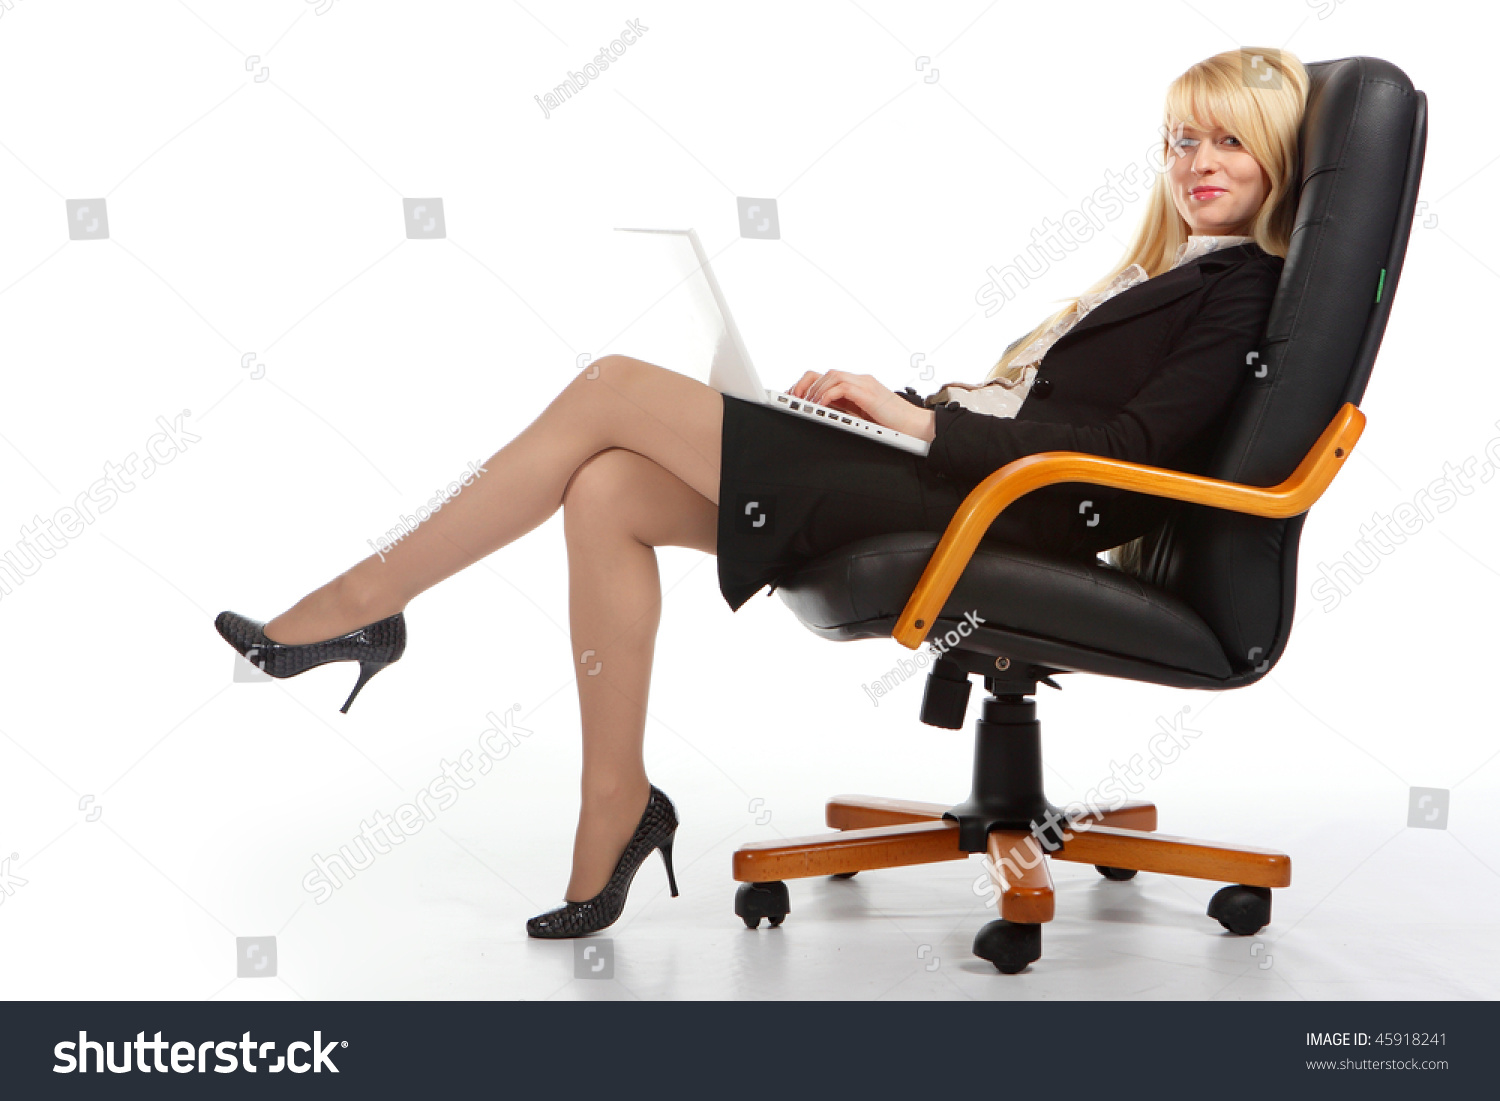 Симпотная девка на кресле